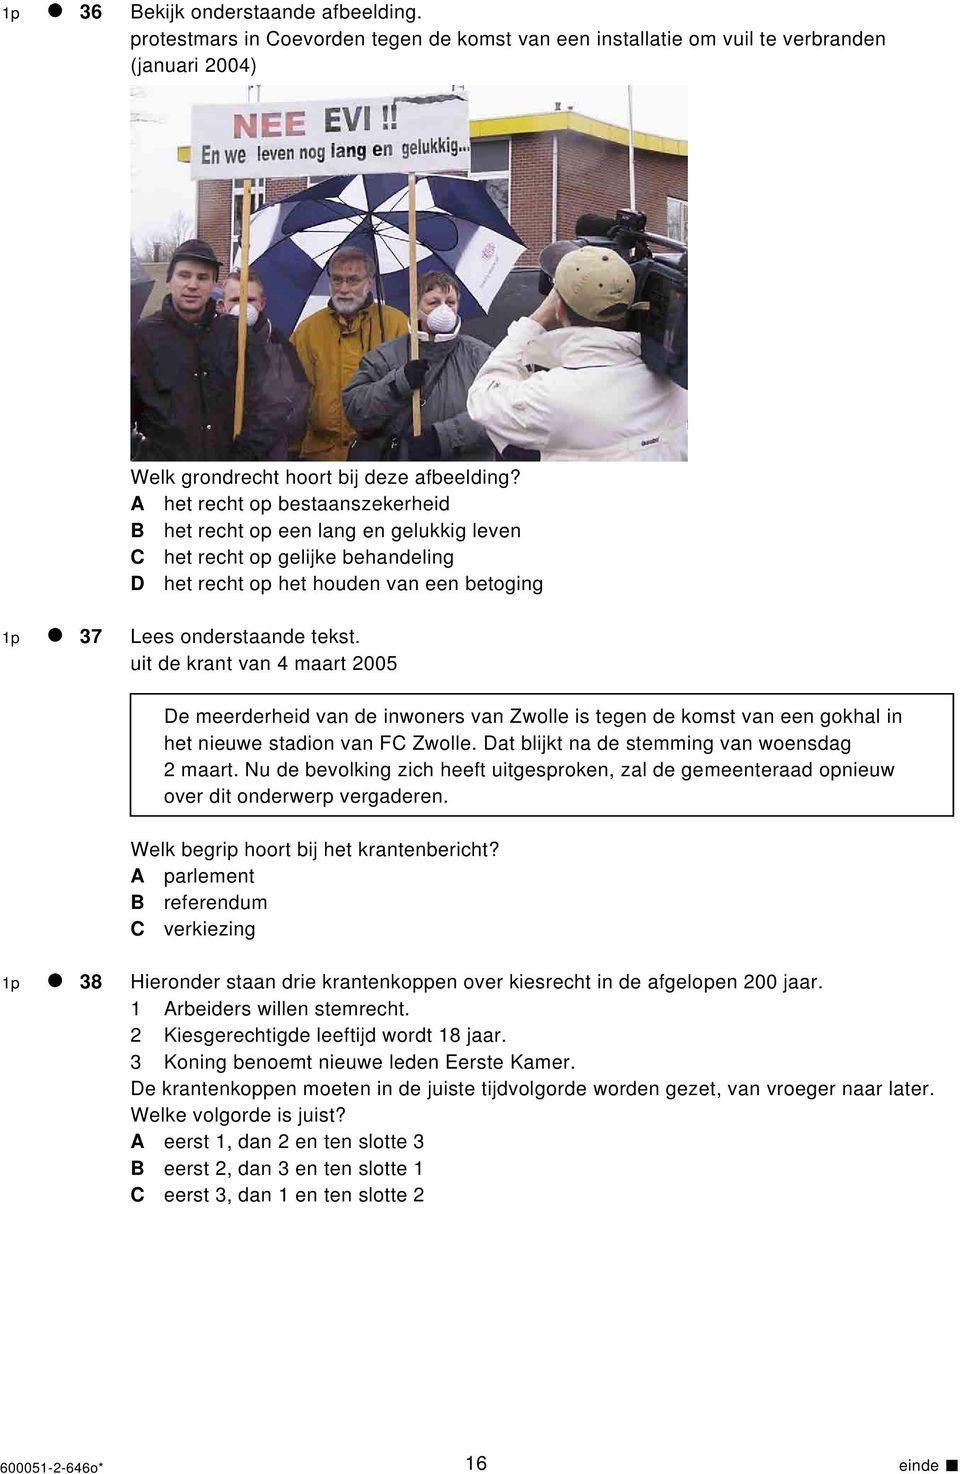 uit de krant van 4 maart 2005 De meerderheid van de inwoners van Zwolle is tegen de komst van een gokhal in het nieuwe stadion van FC Zwolle. Dat blijkt na de stemming van woensdag 2 maart.